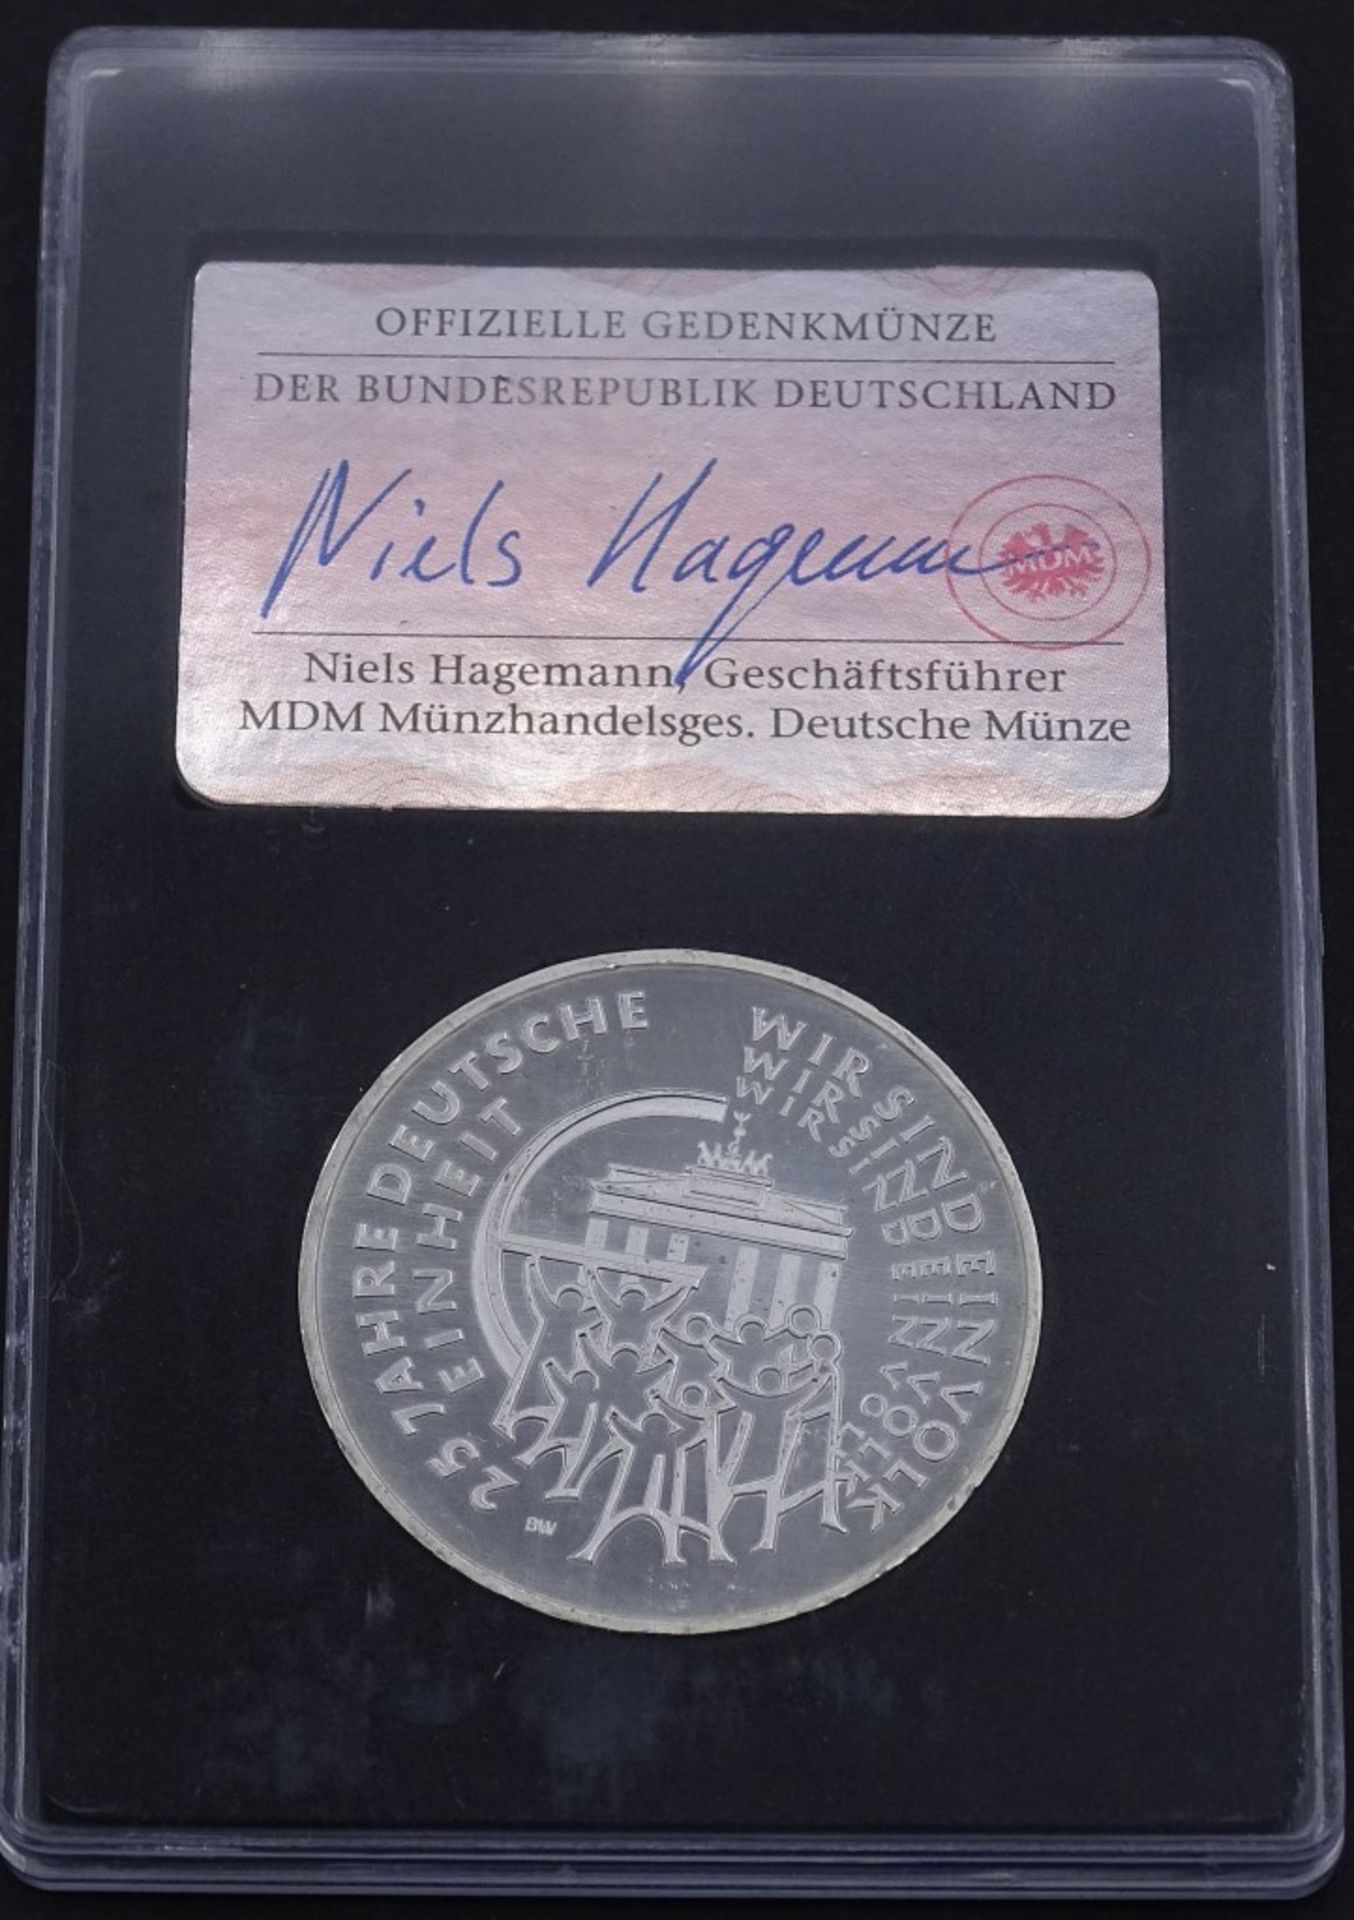 25 Euro Silber Gedenkmünze, 2015, stempelglanz, Silber 999/000, 25 Jahre Deutsche Einhei- - -22.61 % - Bild 2 aus 2